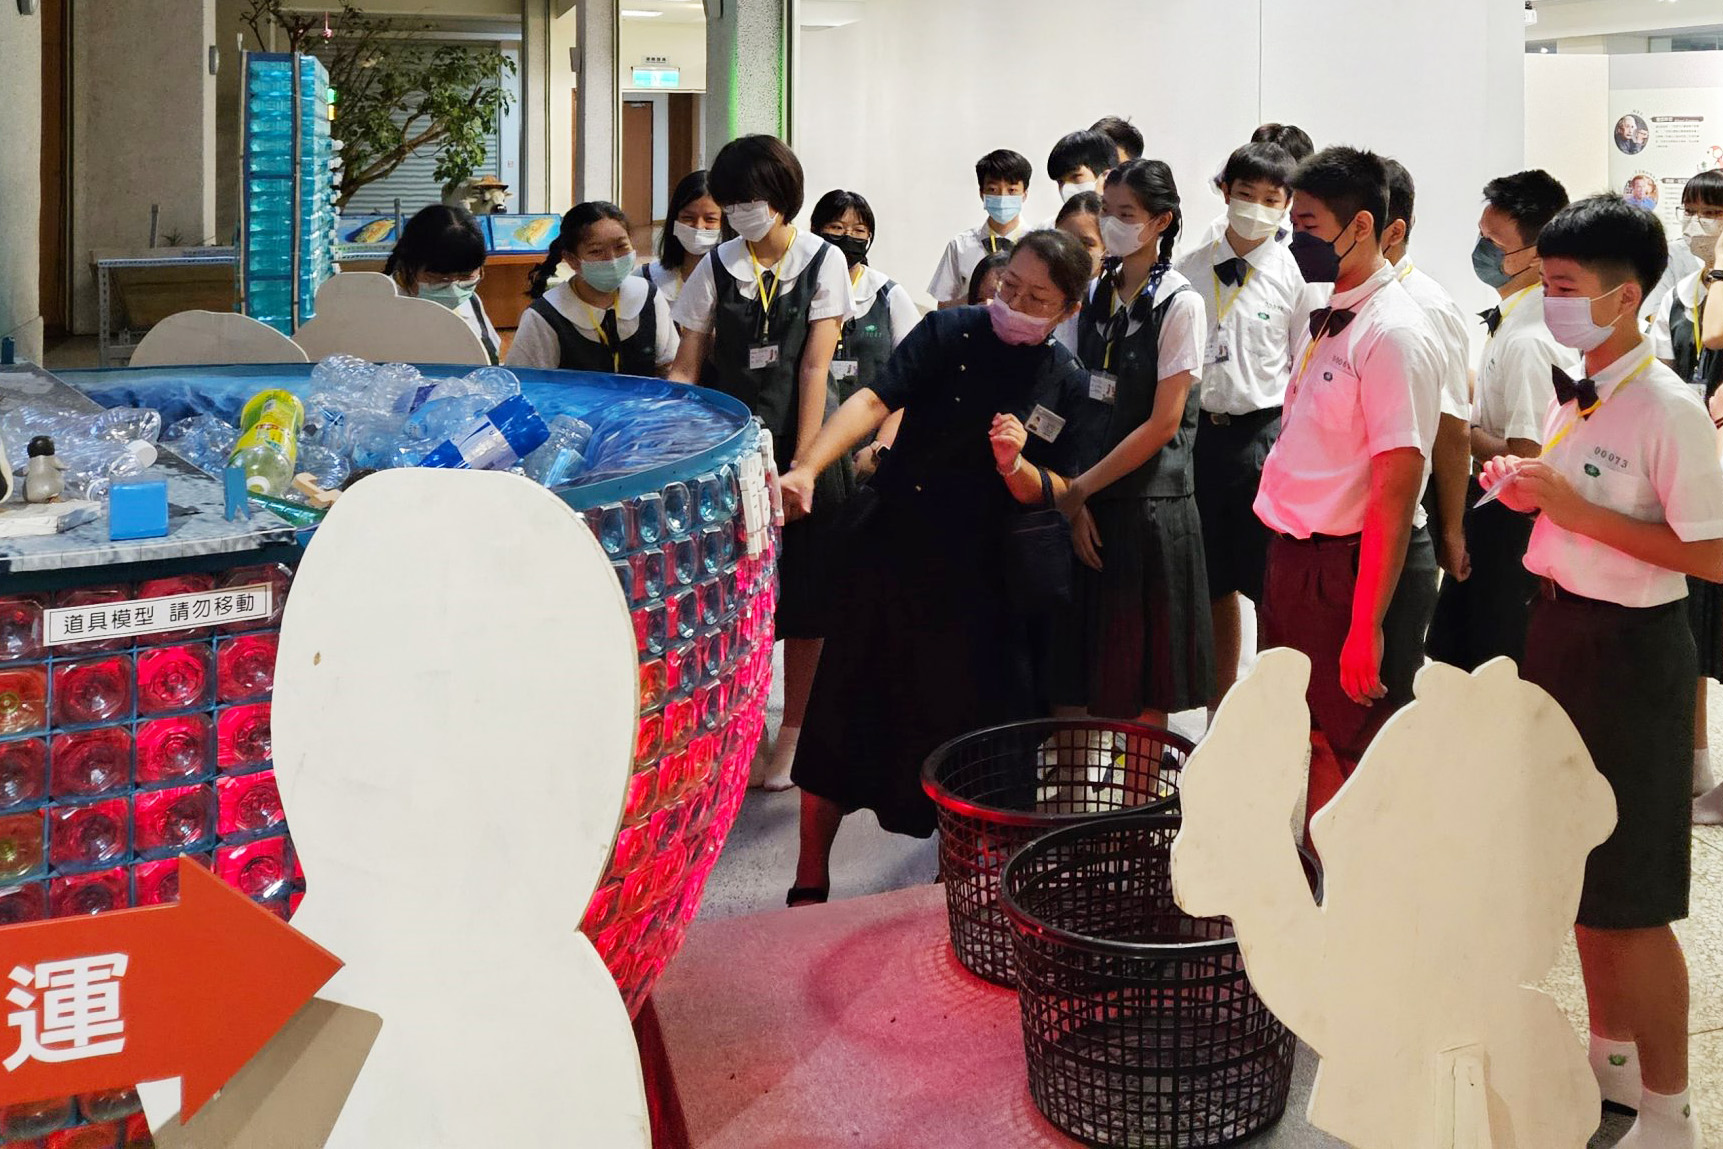 臺中靜思堂以生動活潑的分站活動將環保教育融入生活。